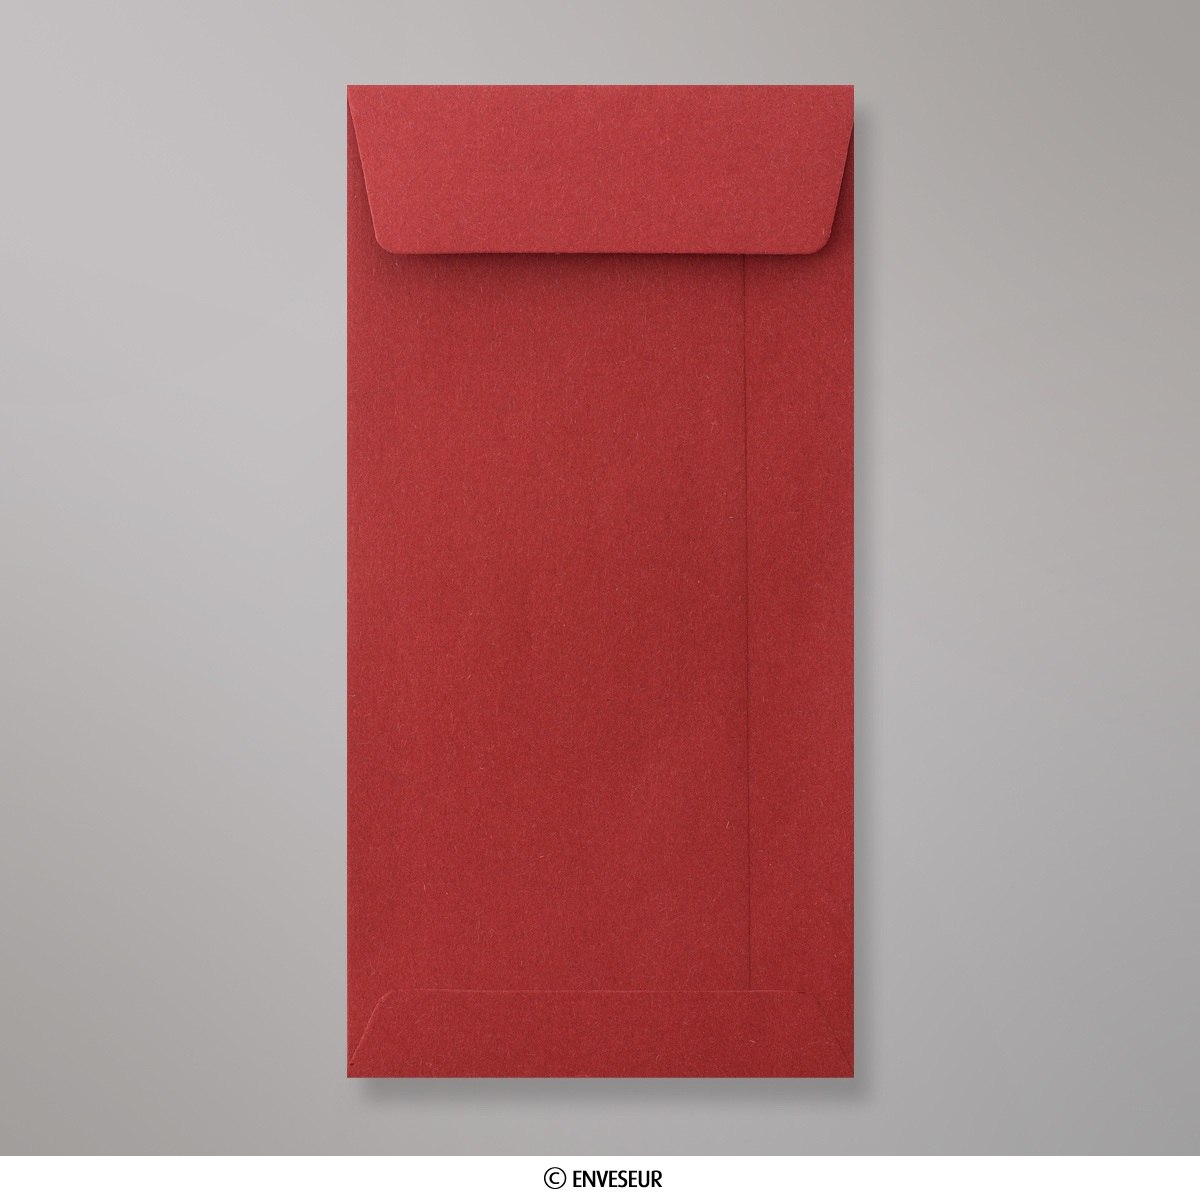 Enveloppe format poche rouge foncée 220x110 mm (DL)